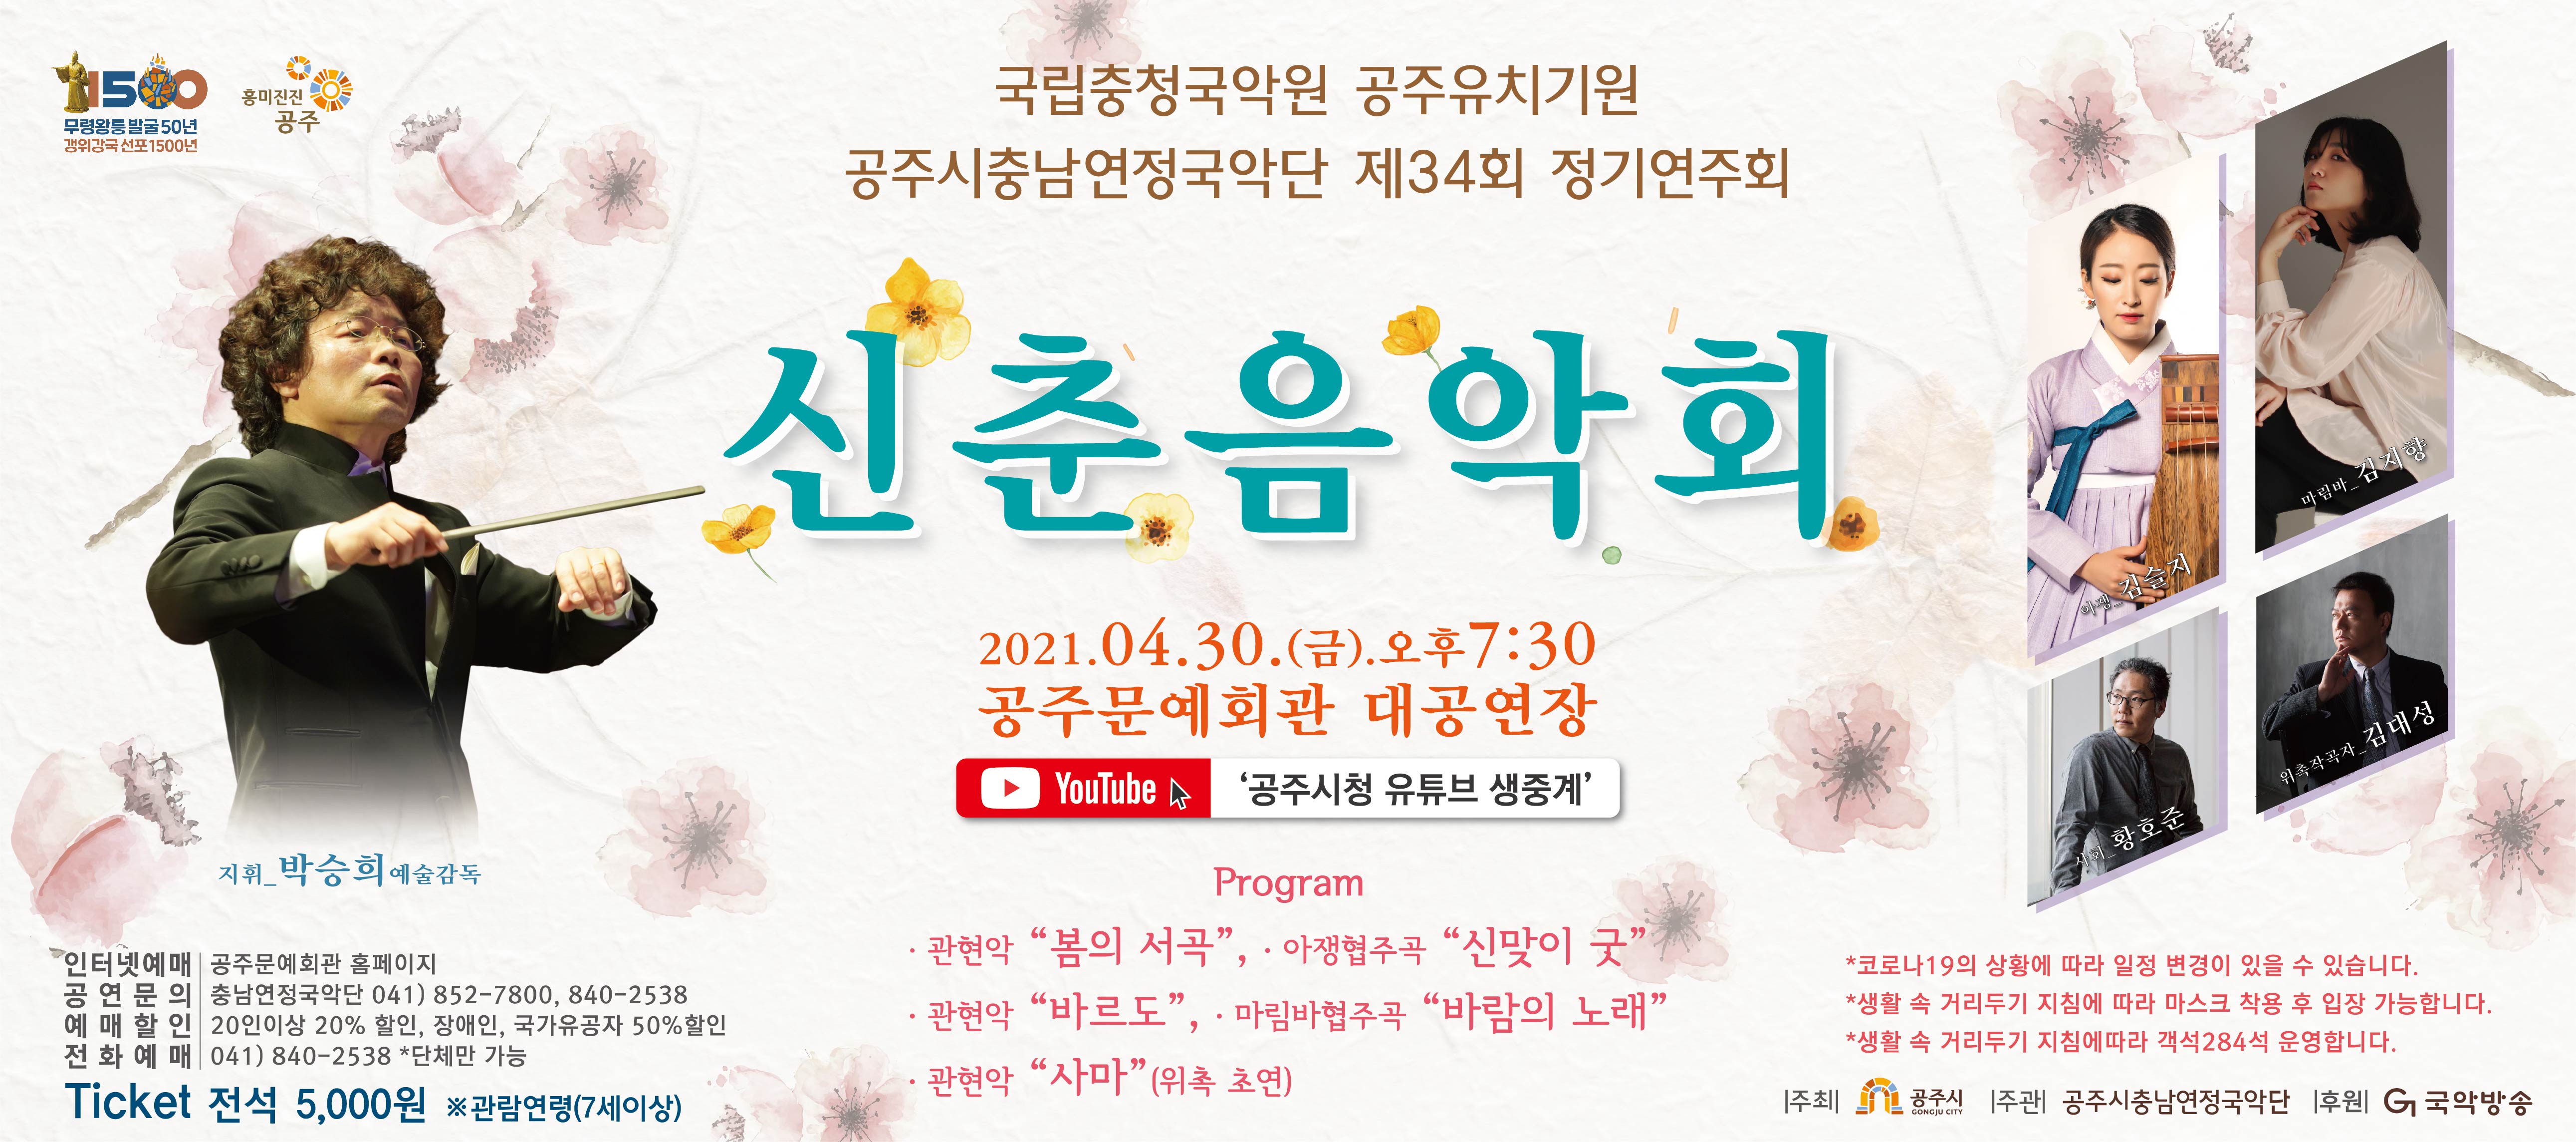 충남연정국악단 제34회 정기연주회 <신춘음악회>